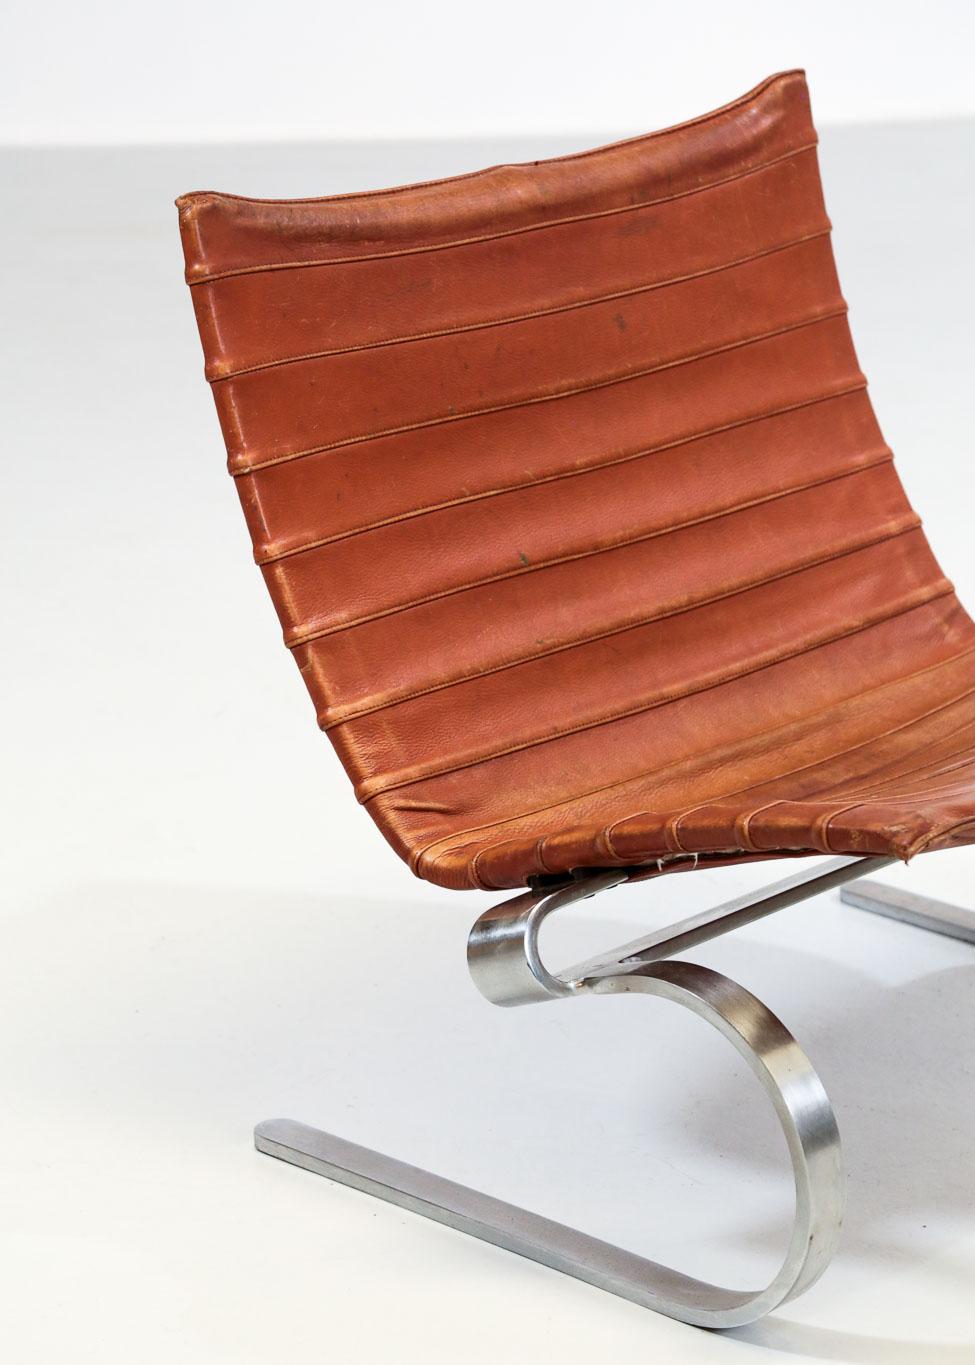 Scandinavian Modern Lounge Chair by Poul Kjaerholm Model PK20, E. Kold Christensen, 1968